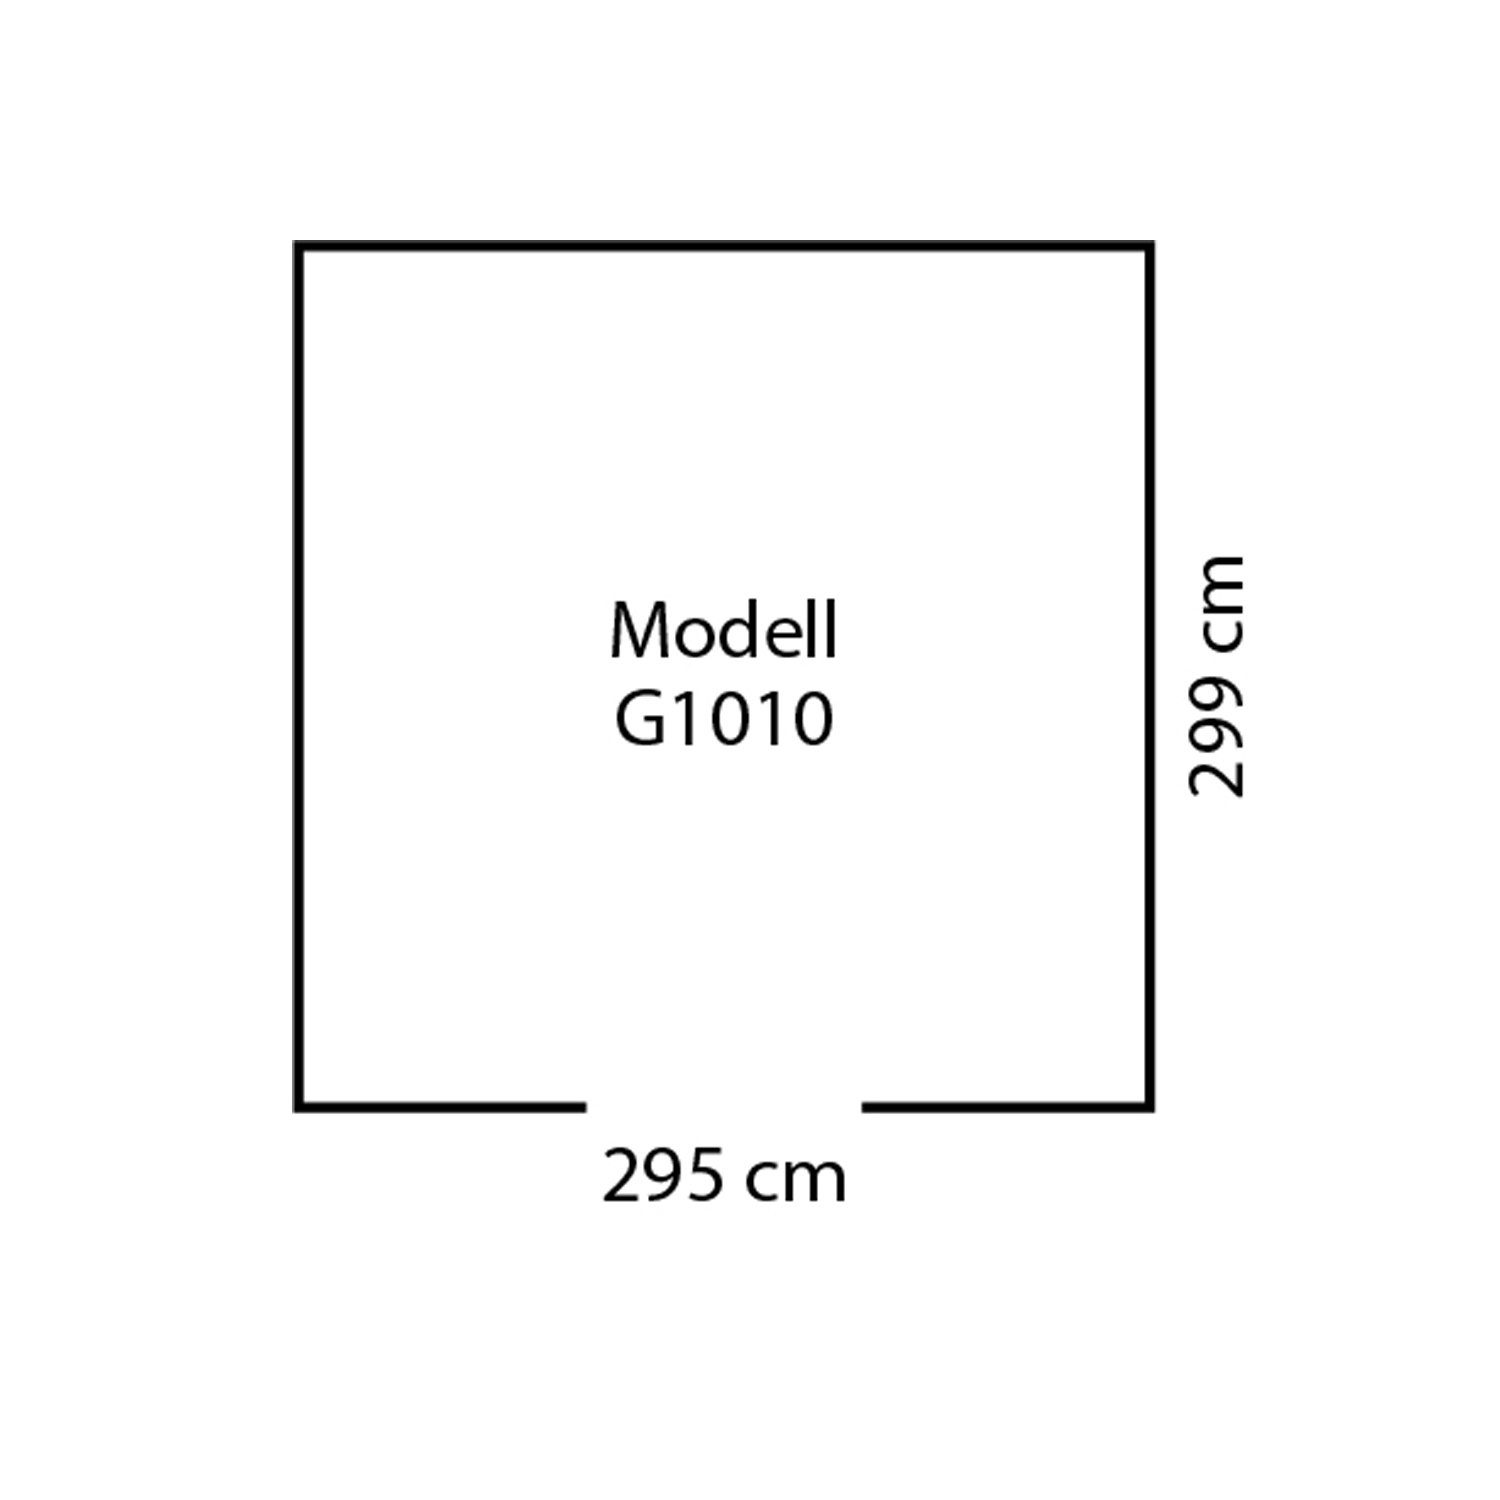 Globel Industries Gerätehaus / 1010" m) Mteall-Gartenmanager silber "Dream metallic (9,52